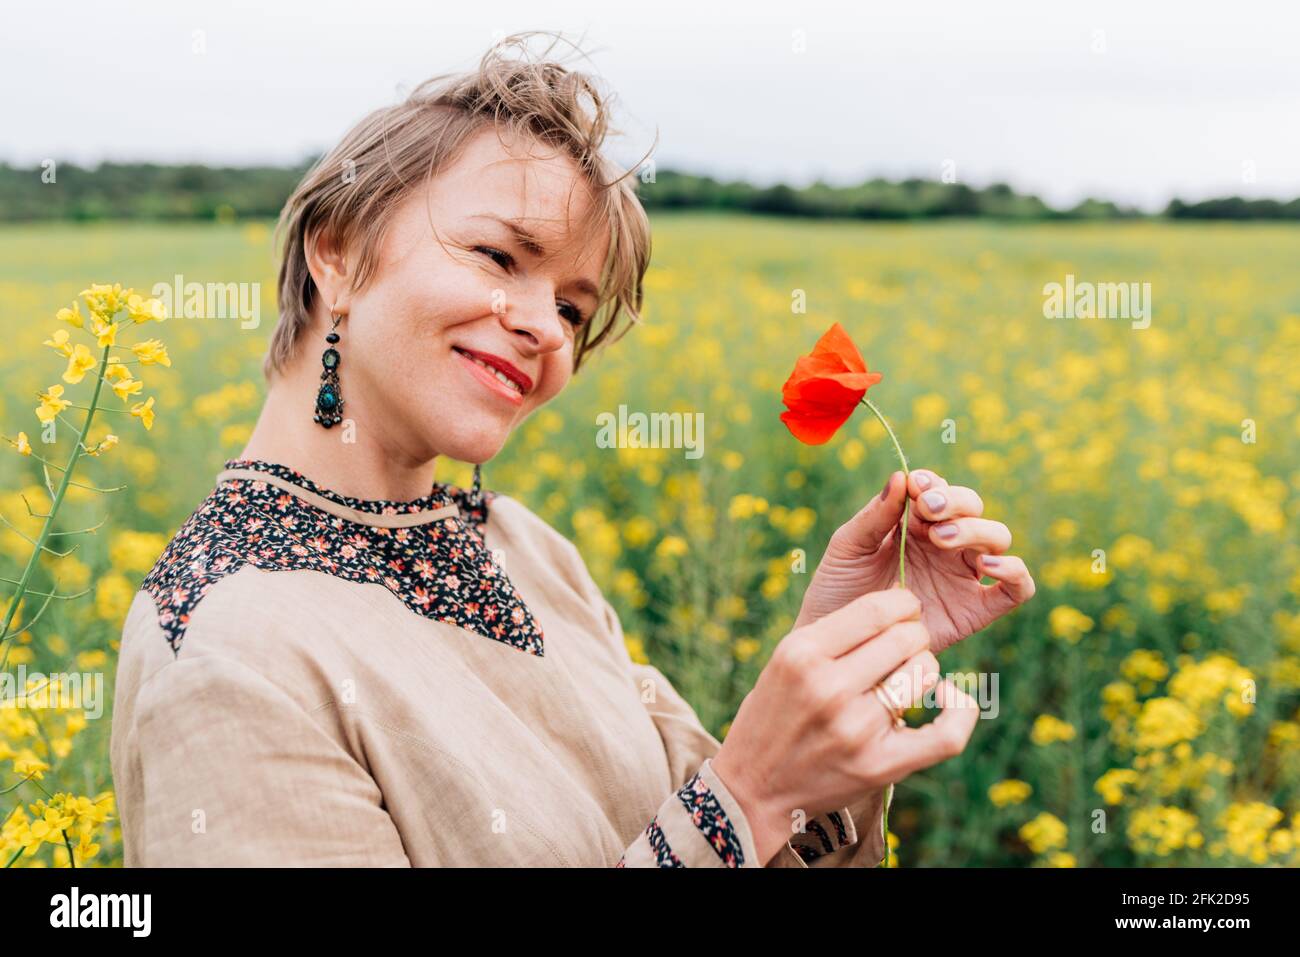 Horizontales Porträt einer attraktiven jungen Frau auf einem Blumenfeld. Sie lächelt, während sie eine Mohnblume hält Stockfoto